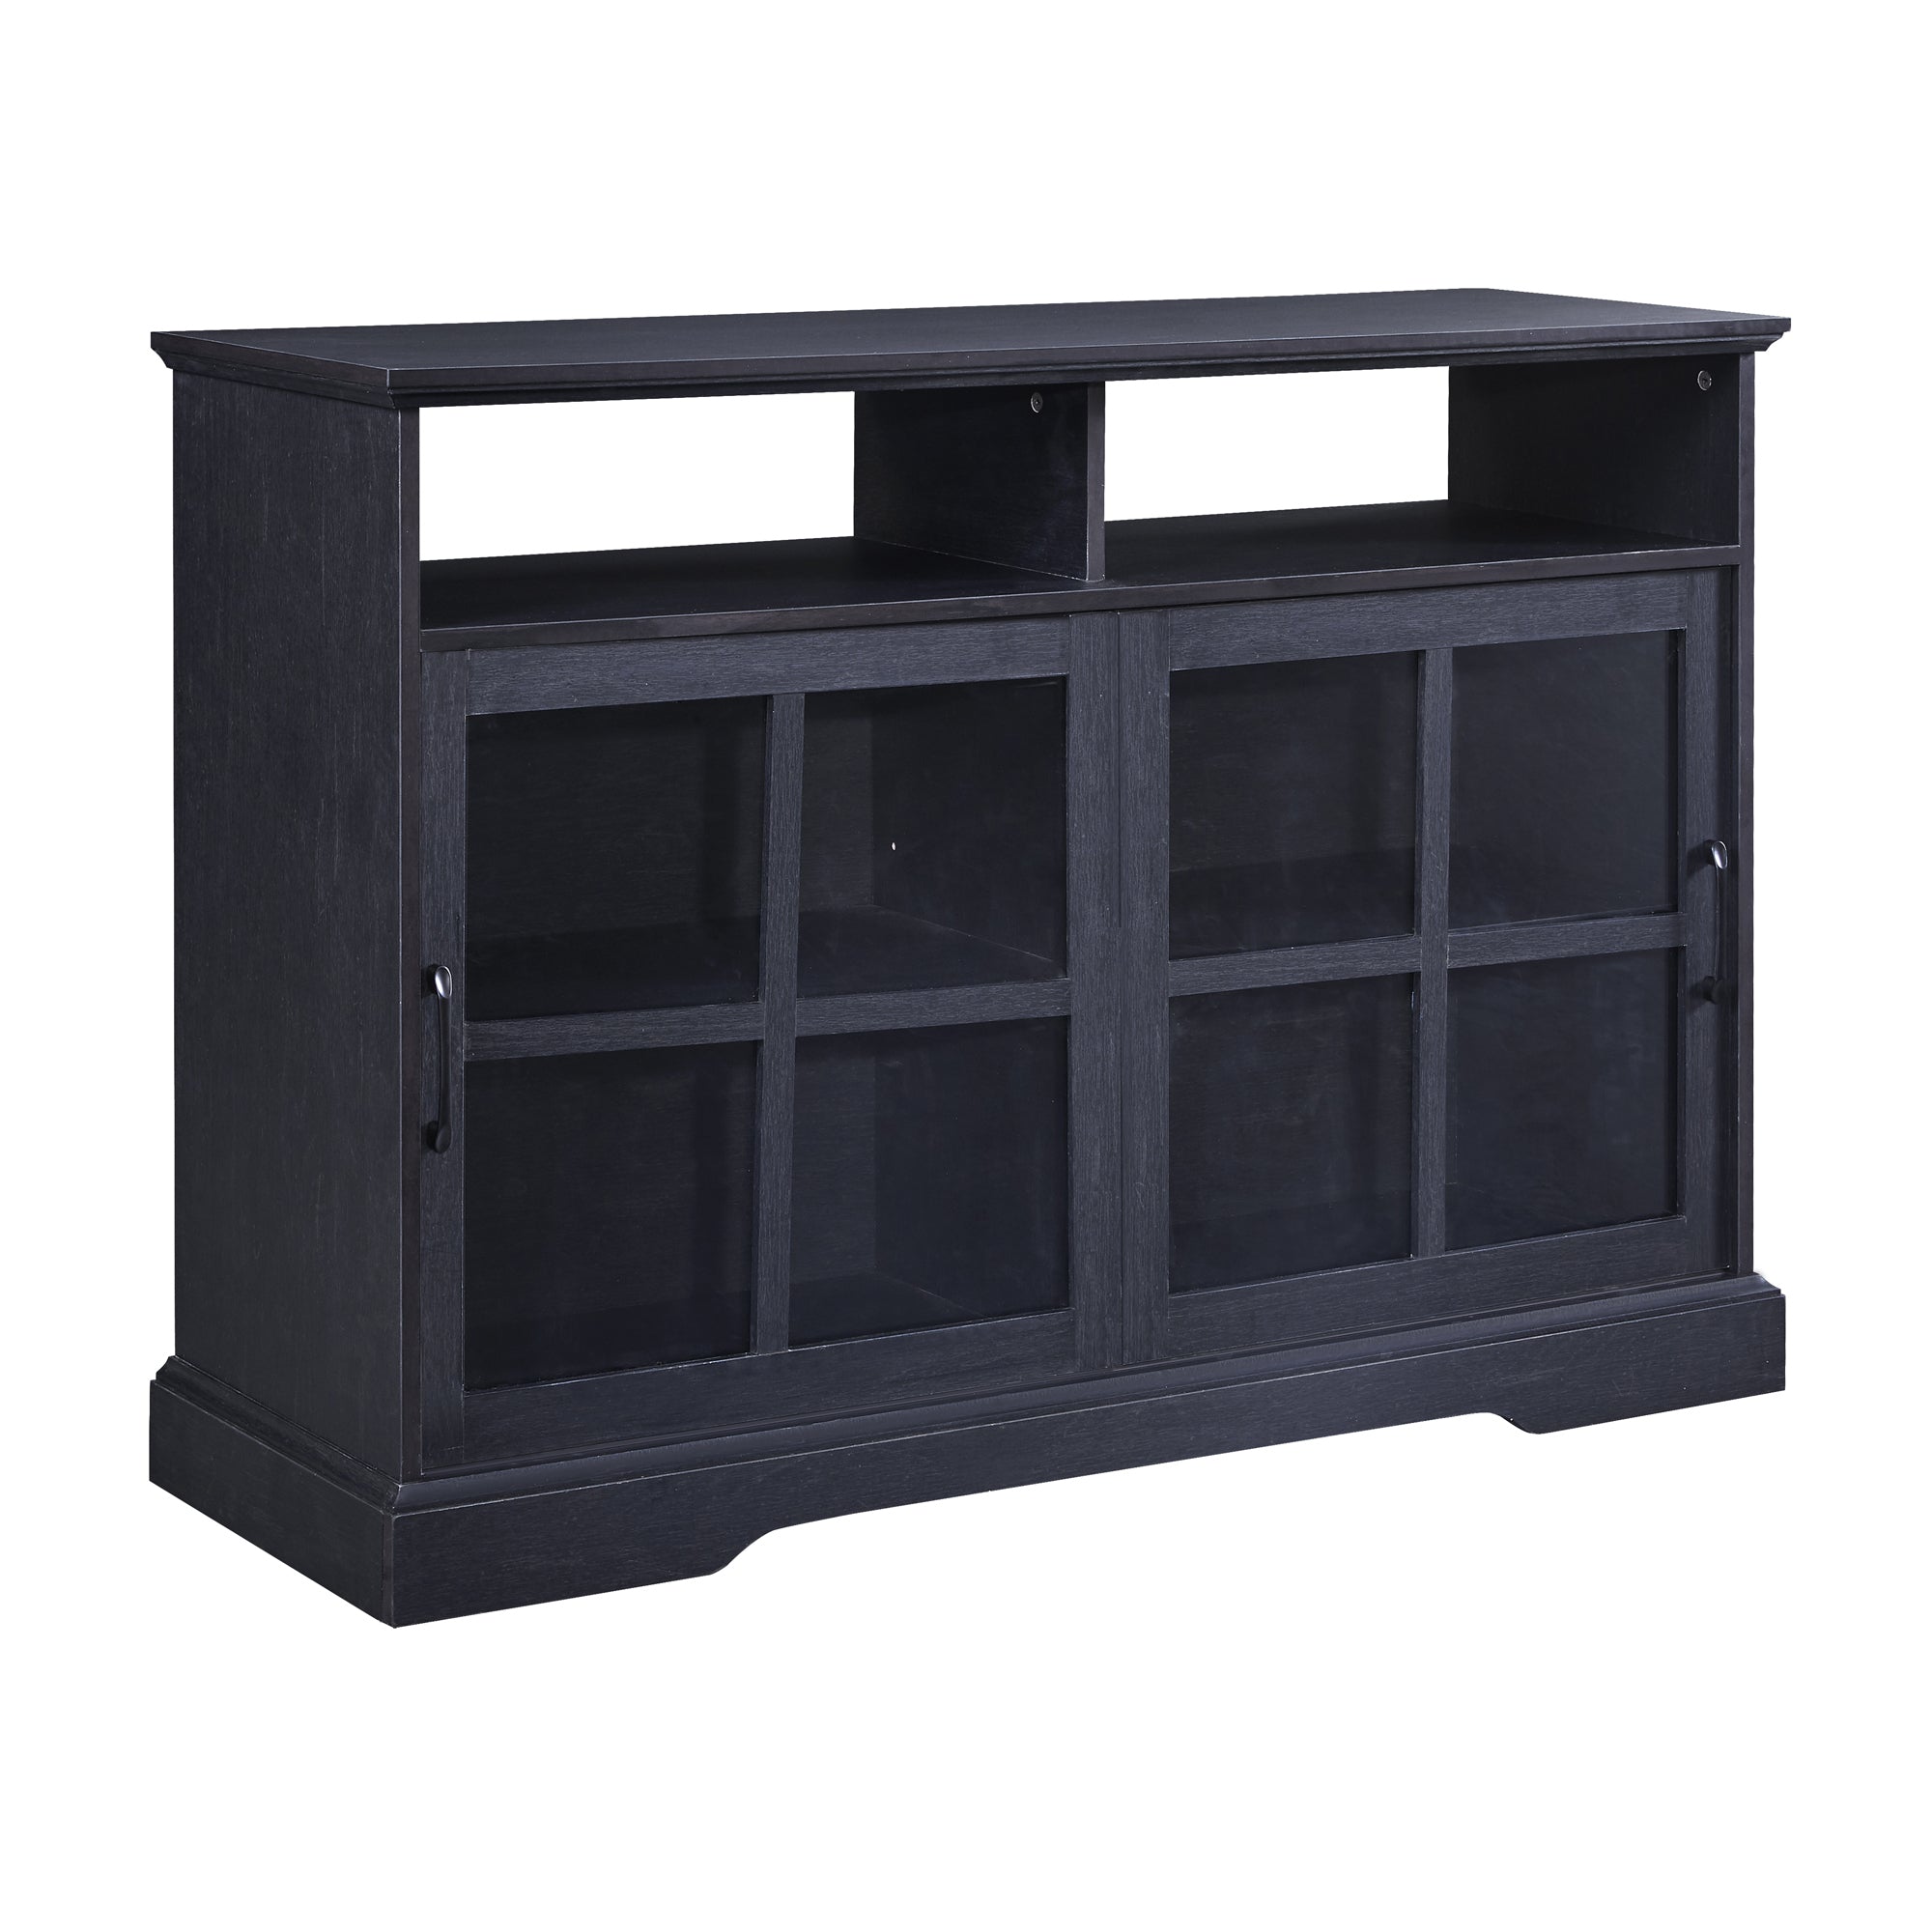 TREXM 2 Glass Sliding Doors and Adjustable Shelves Dining Room Storage Cabinet (Black)